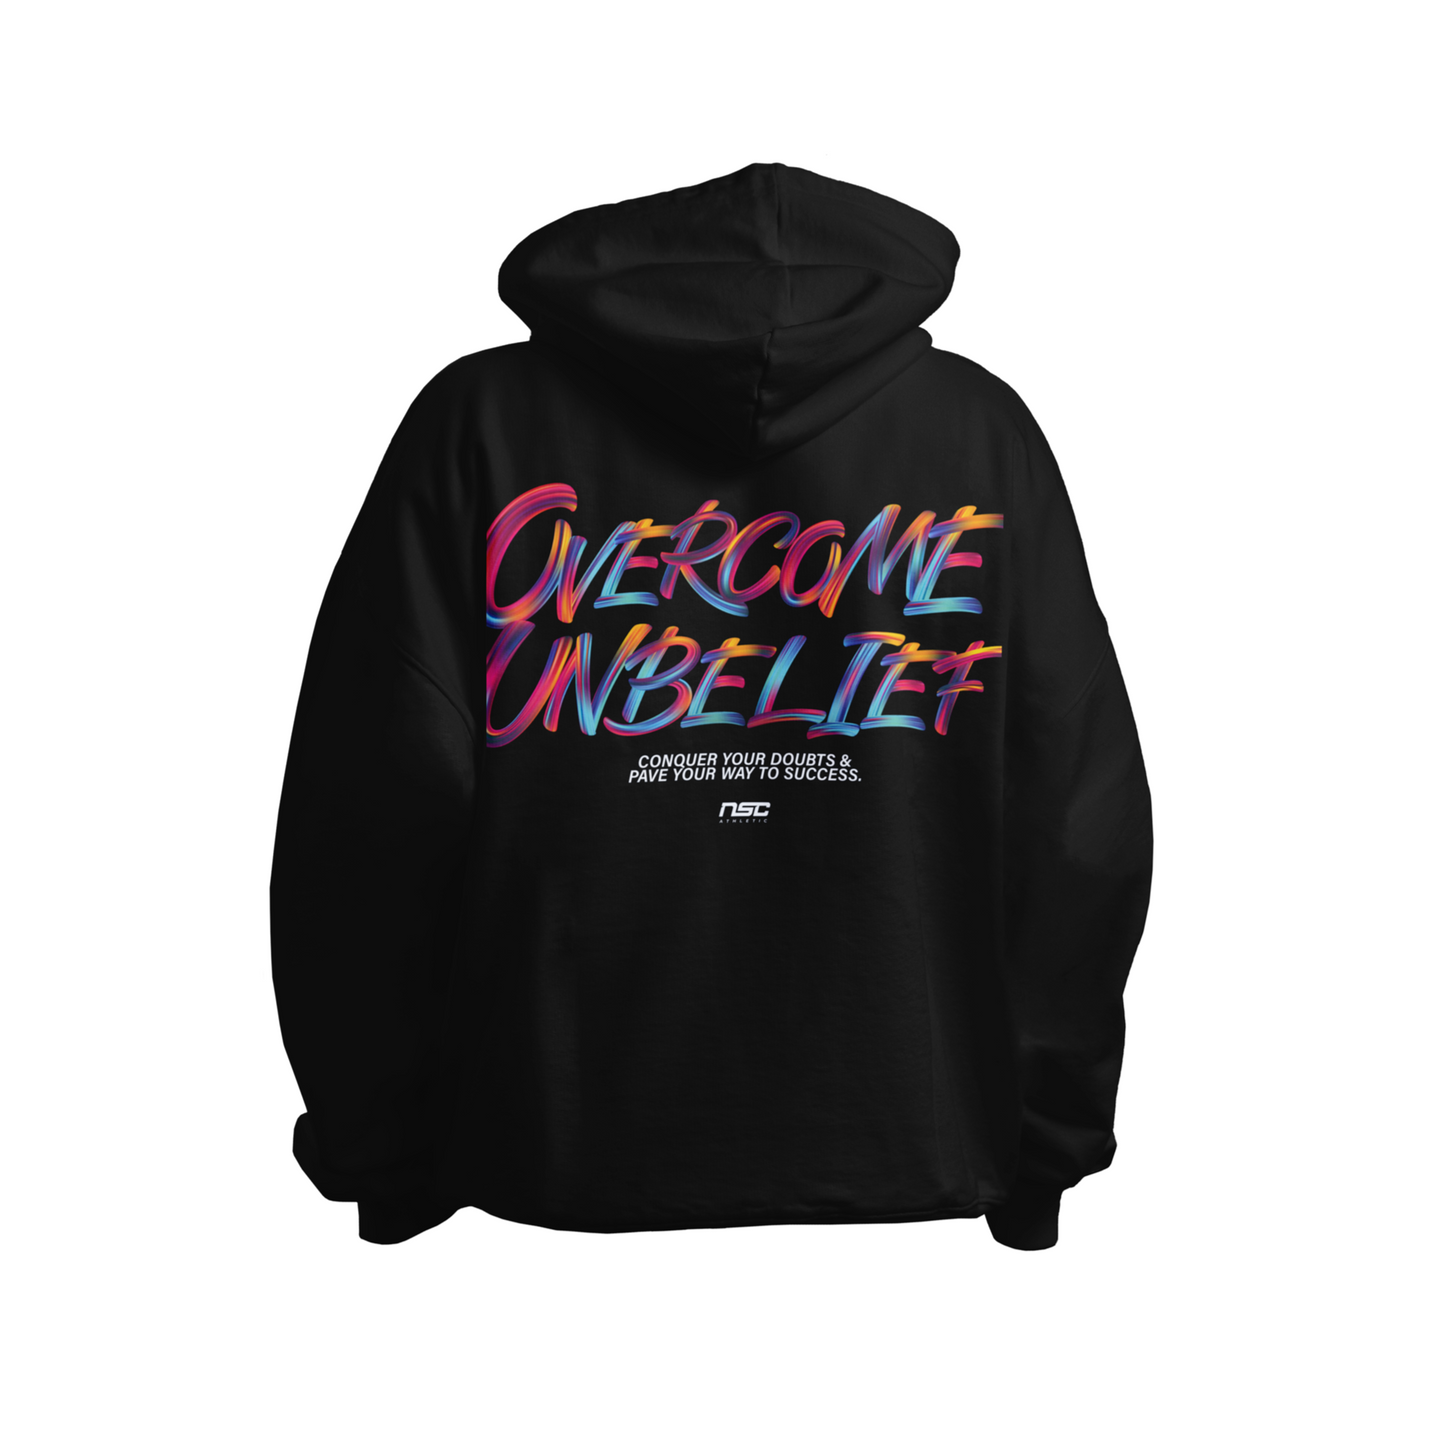 Overcome Unbelief Hoodie - Black